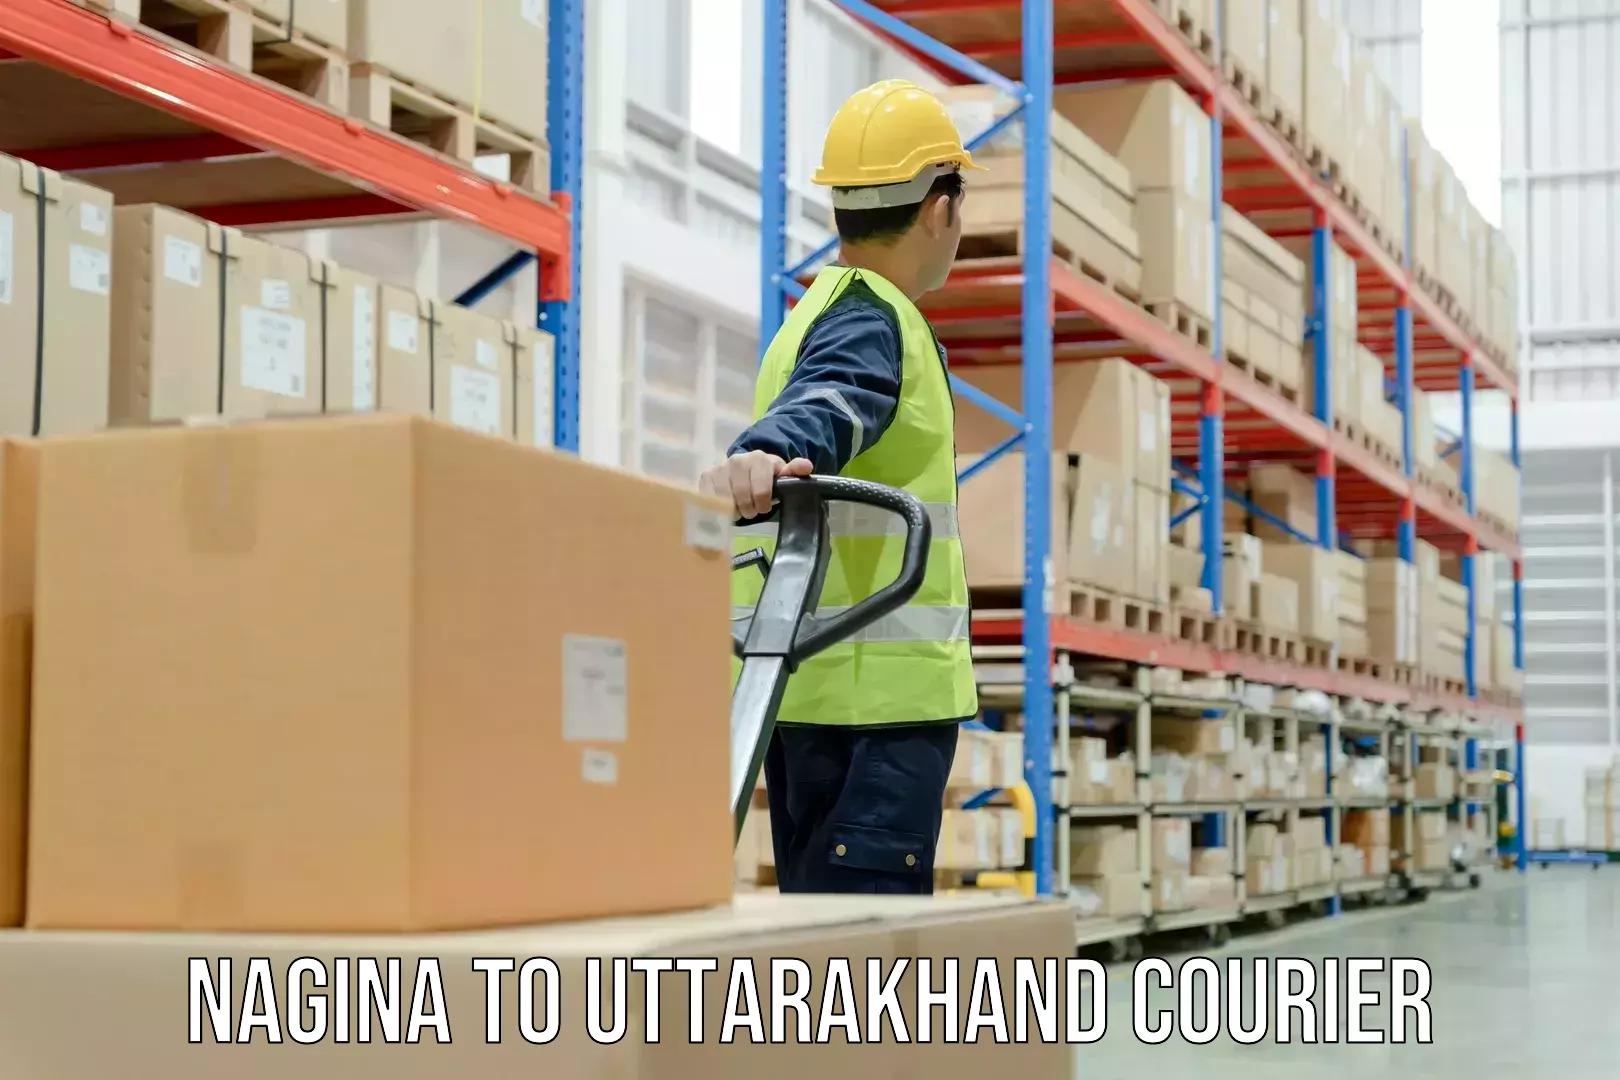 Quality courier partnerships Nagina to Uttarakhand